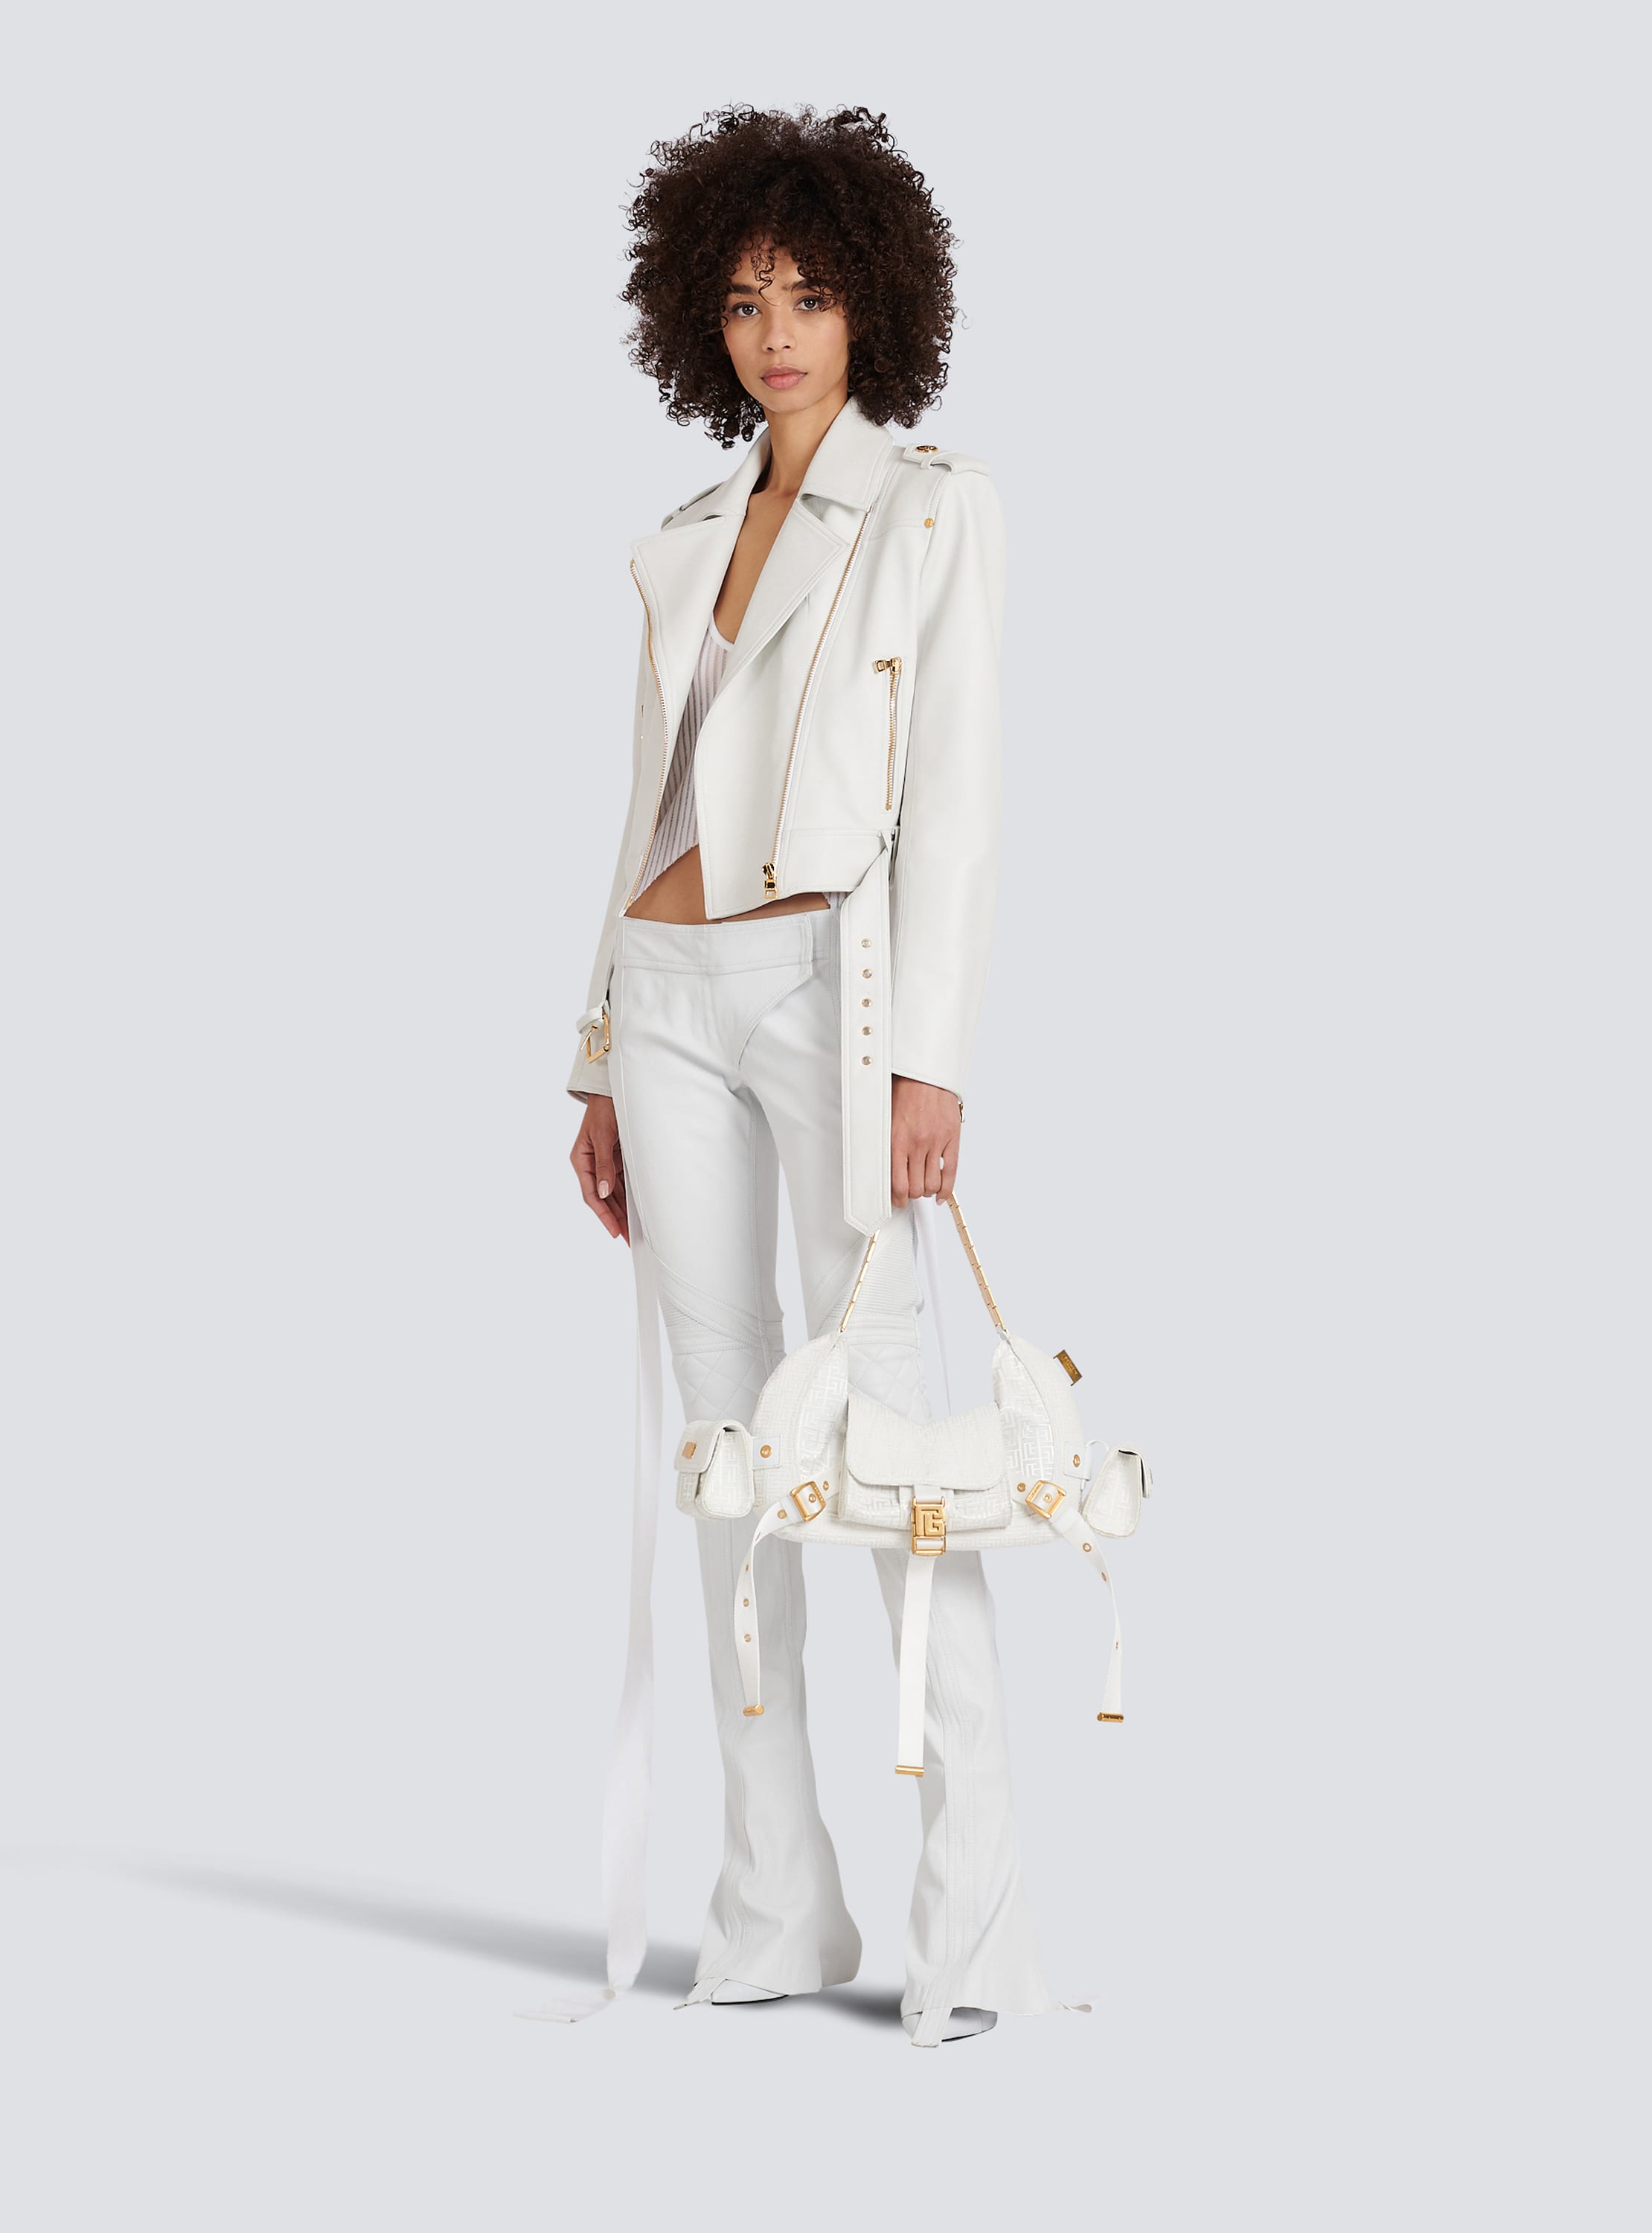 fashion white leather jacket womens